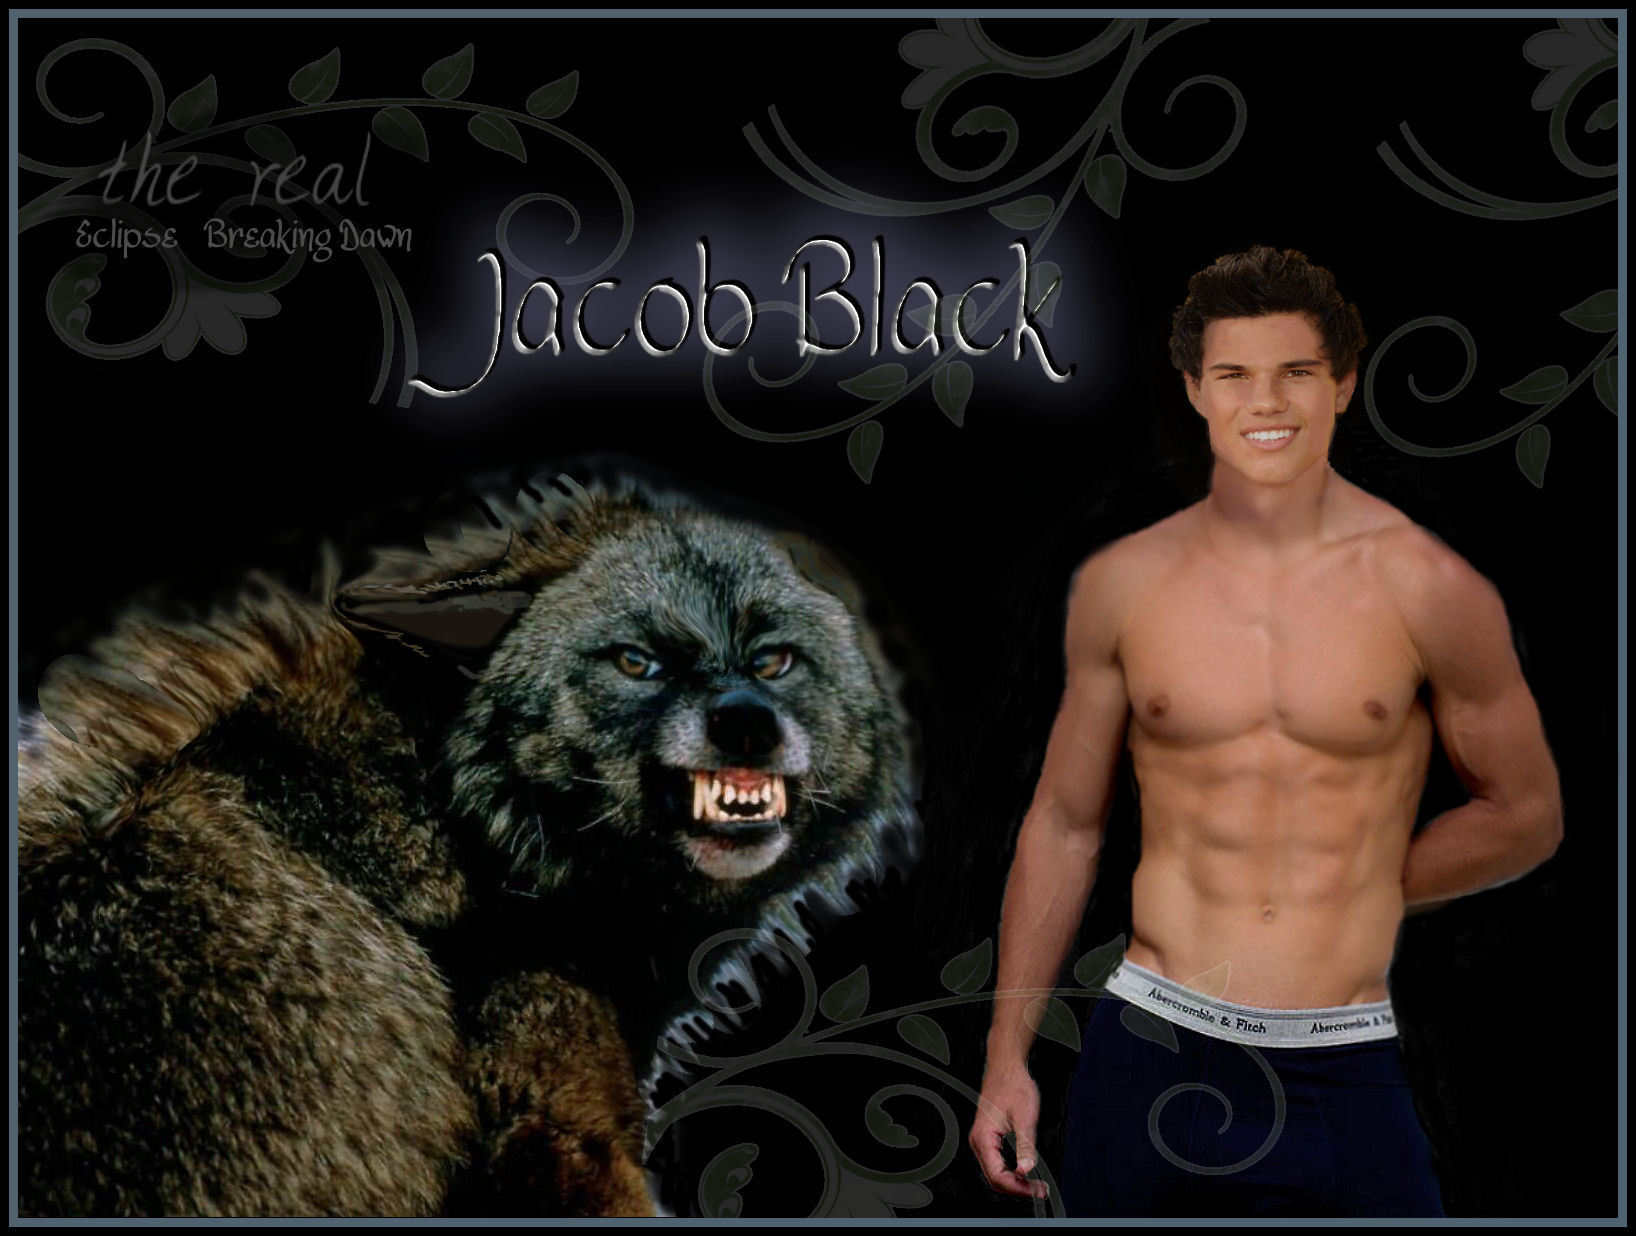 Jacob-Black-twilight-series-3497600-1636-1236